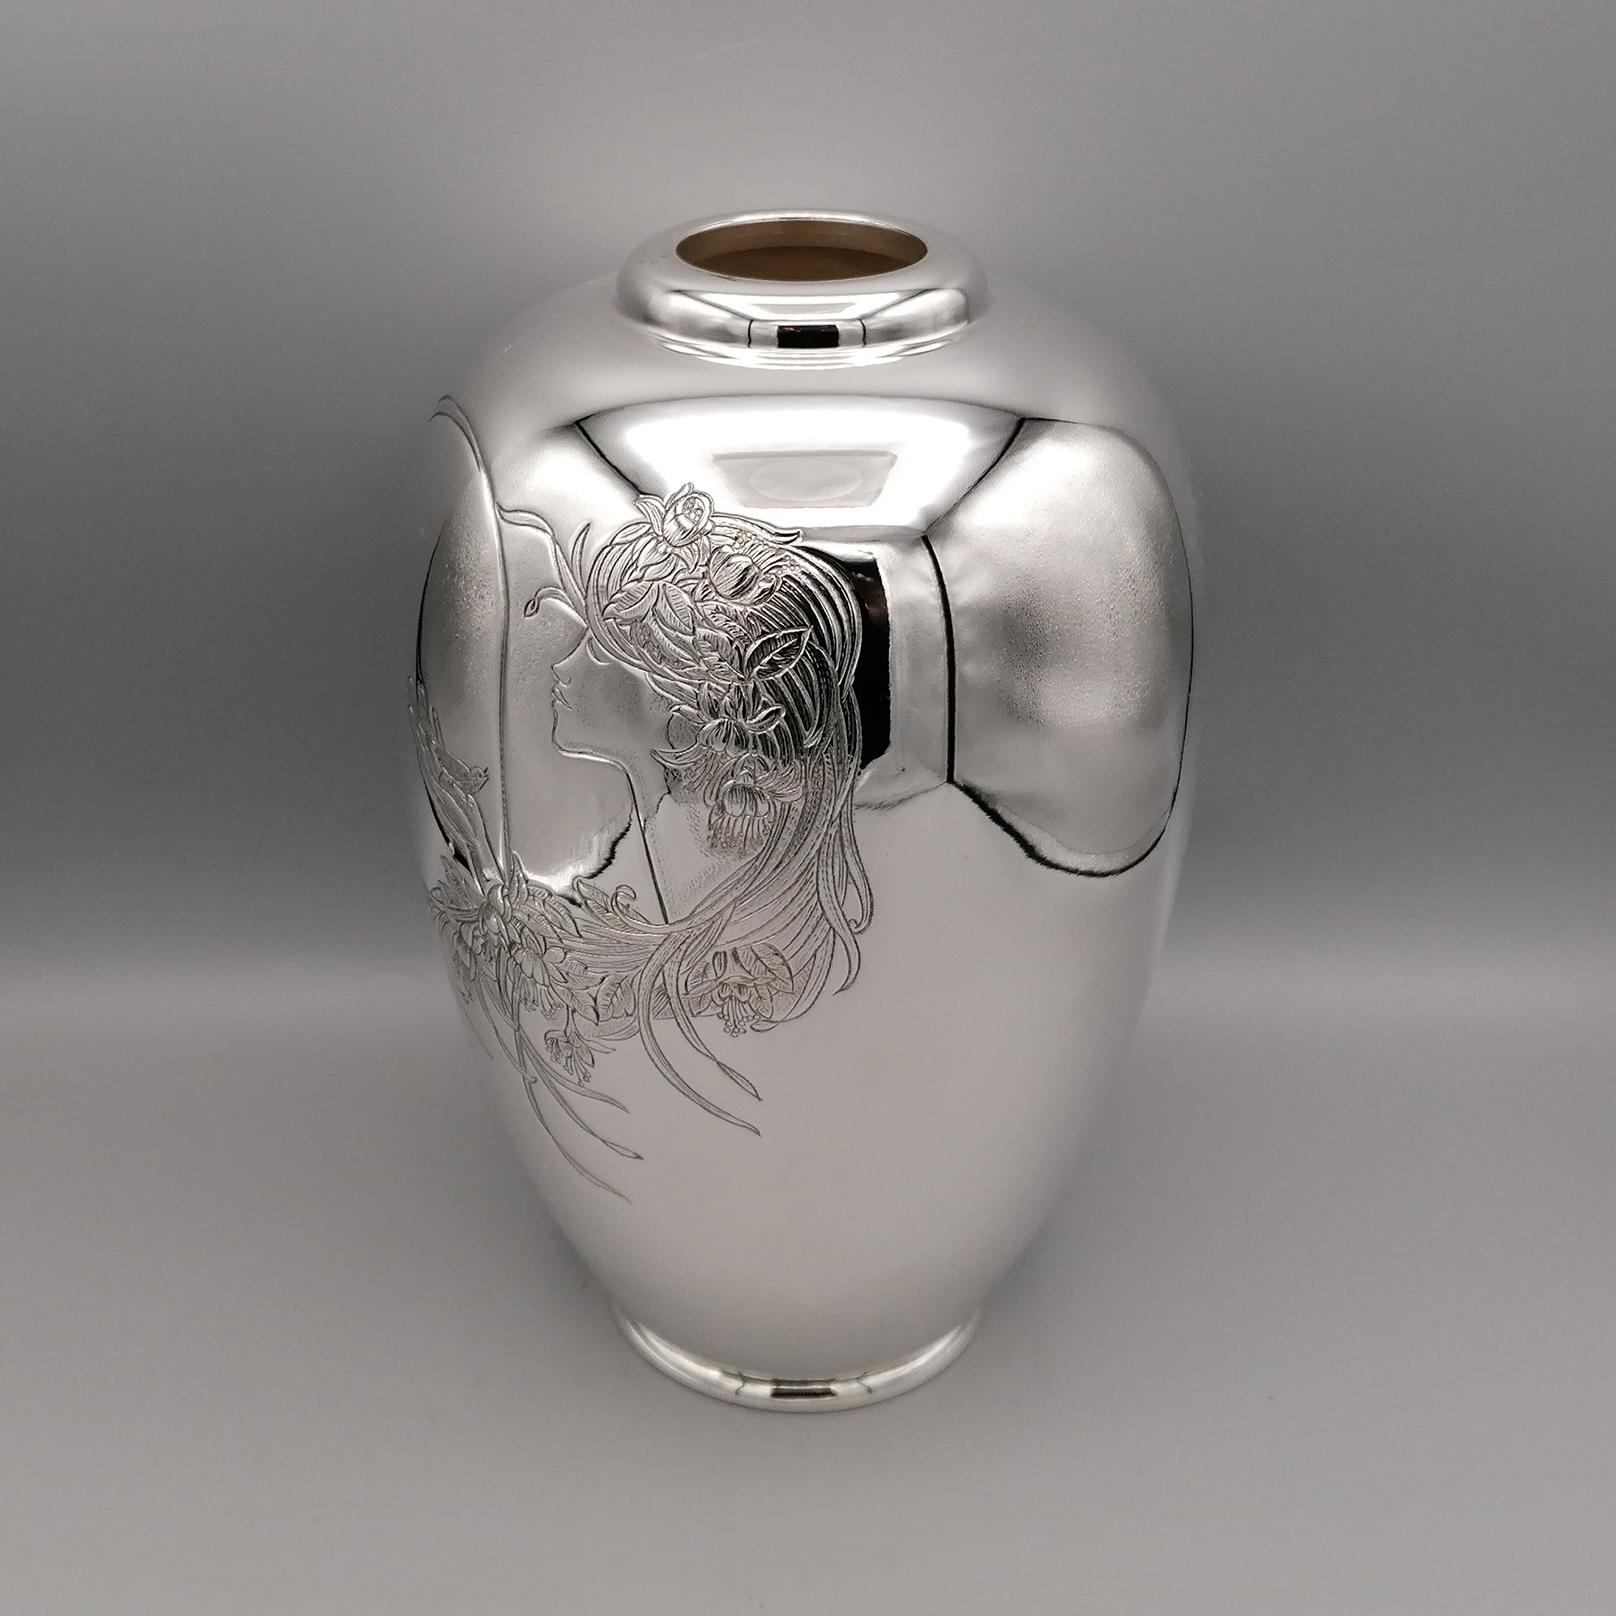 Vase aus massivem 800er Silber.
Die Vase hat eine runde, bauchige Form und wurde mit einer glatten und glänzenden Oberfläche hergestellt.
Der Grundstein wurde mit einer Handgravur verziert, die eine orientalische Frau mit langem,